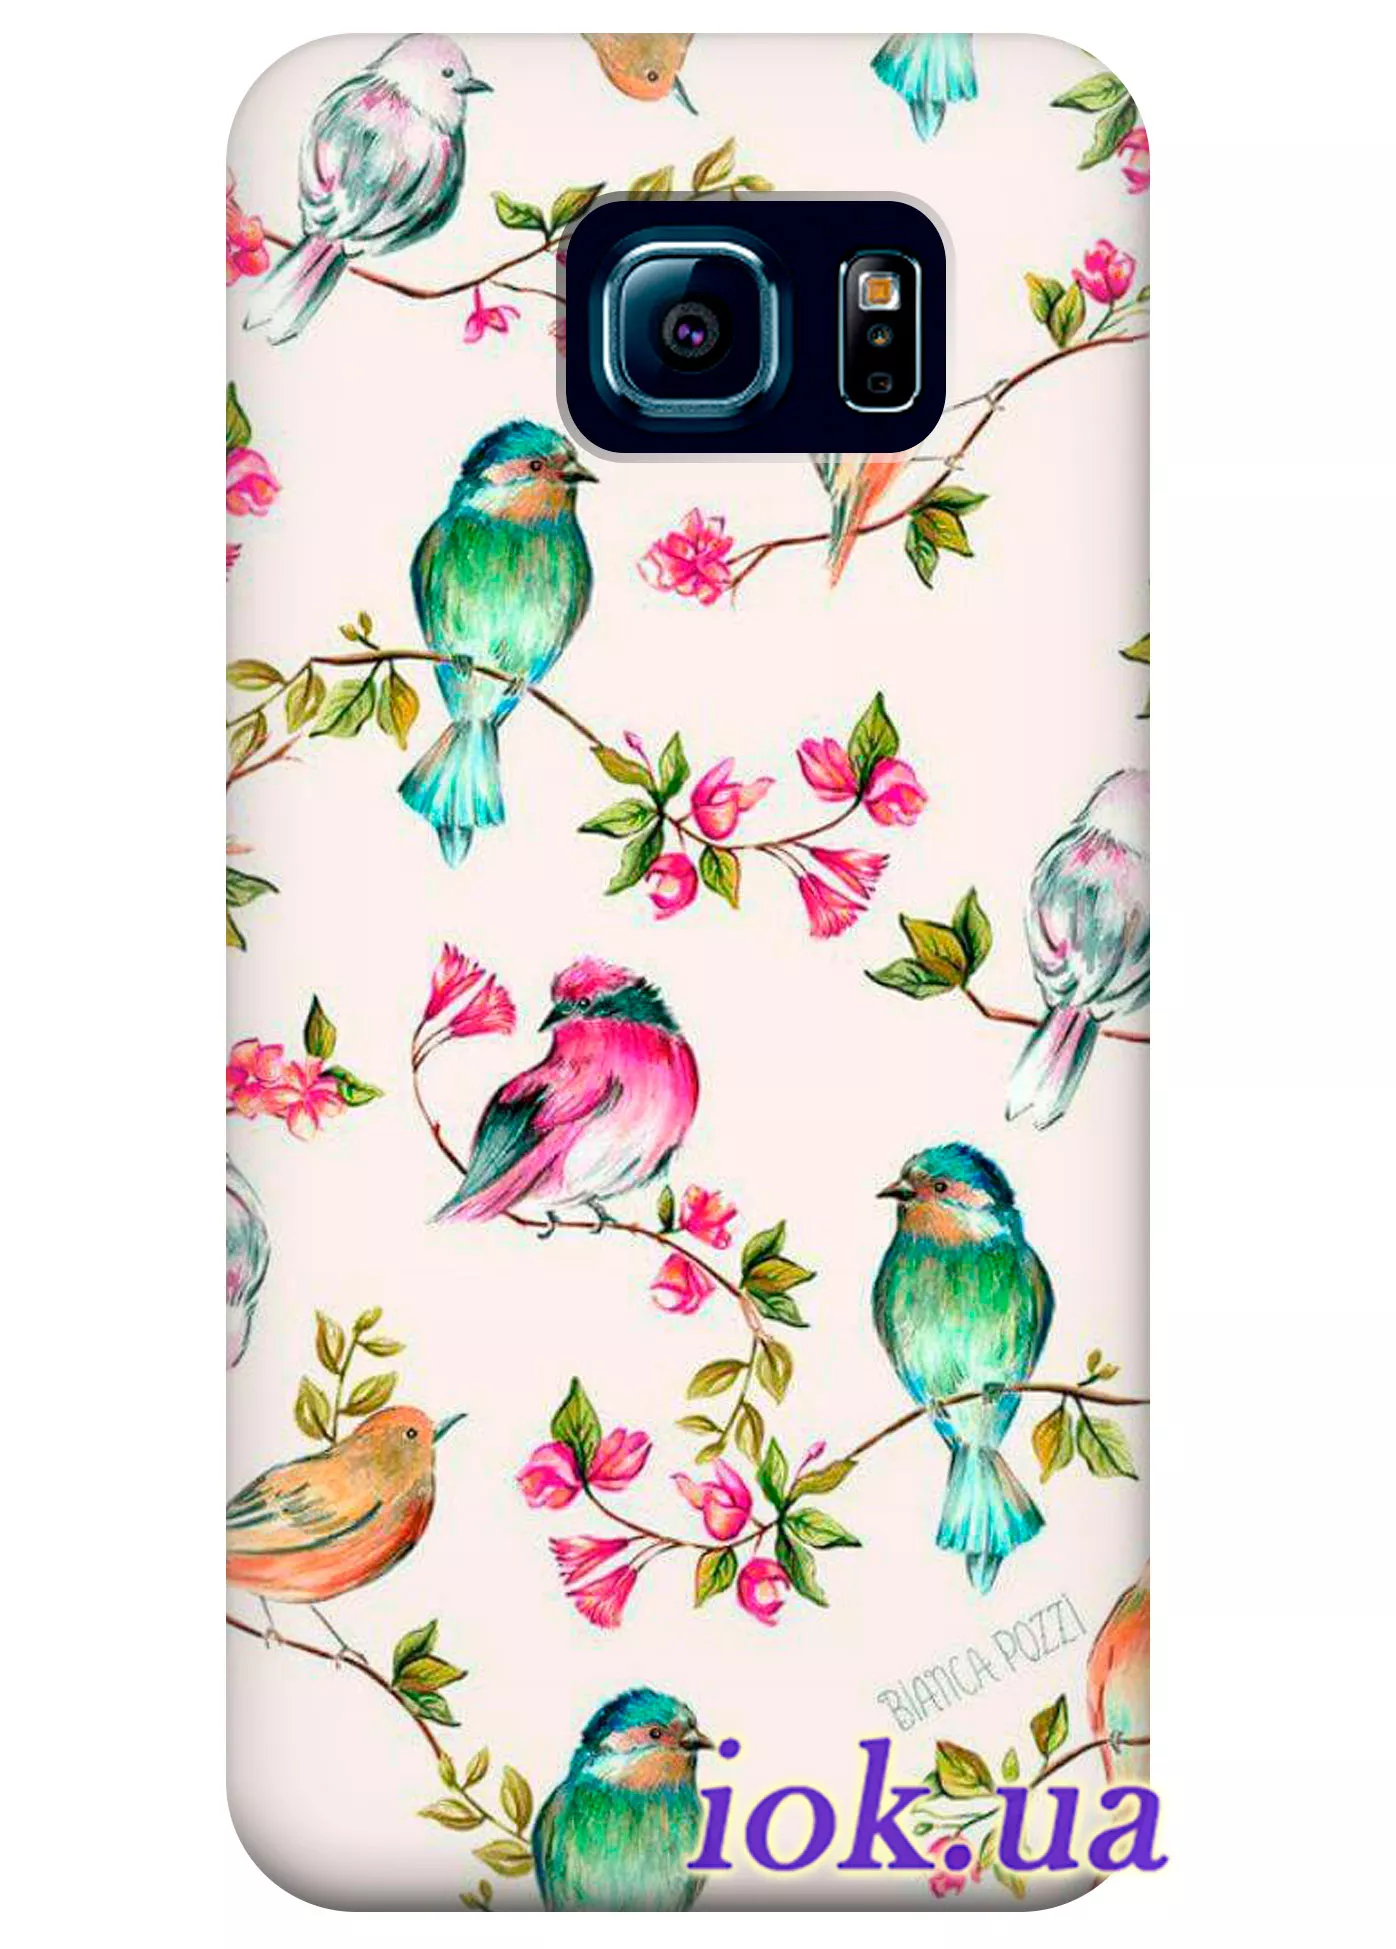 Чехол для Galaxy S6 Edge - Прекрасные птицы